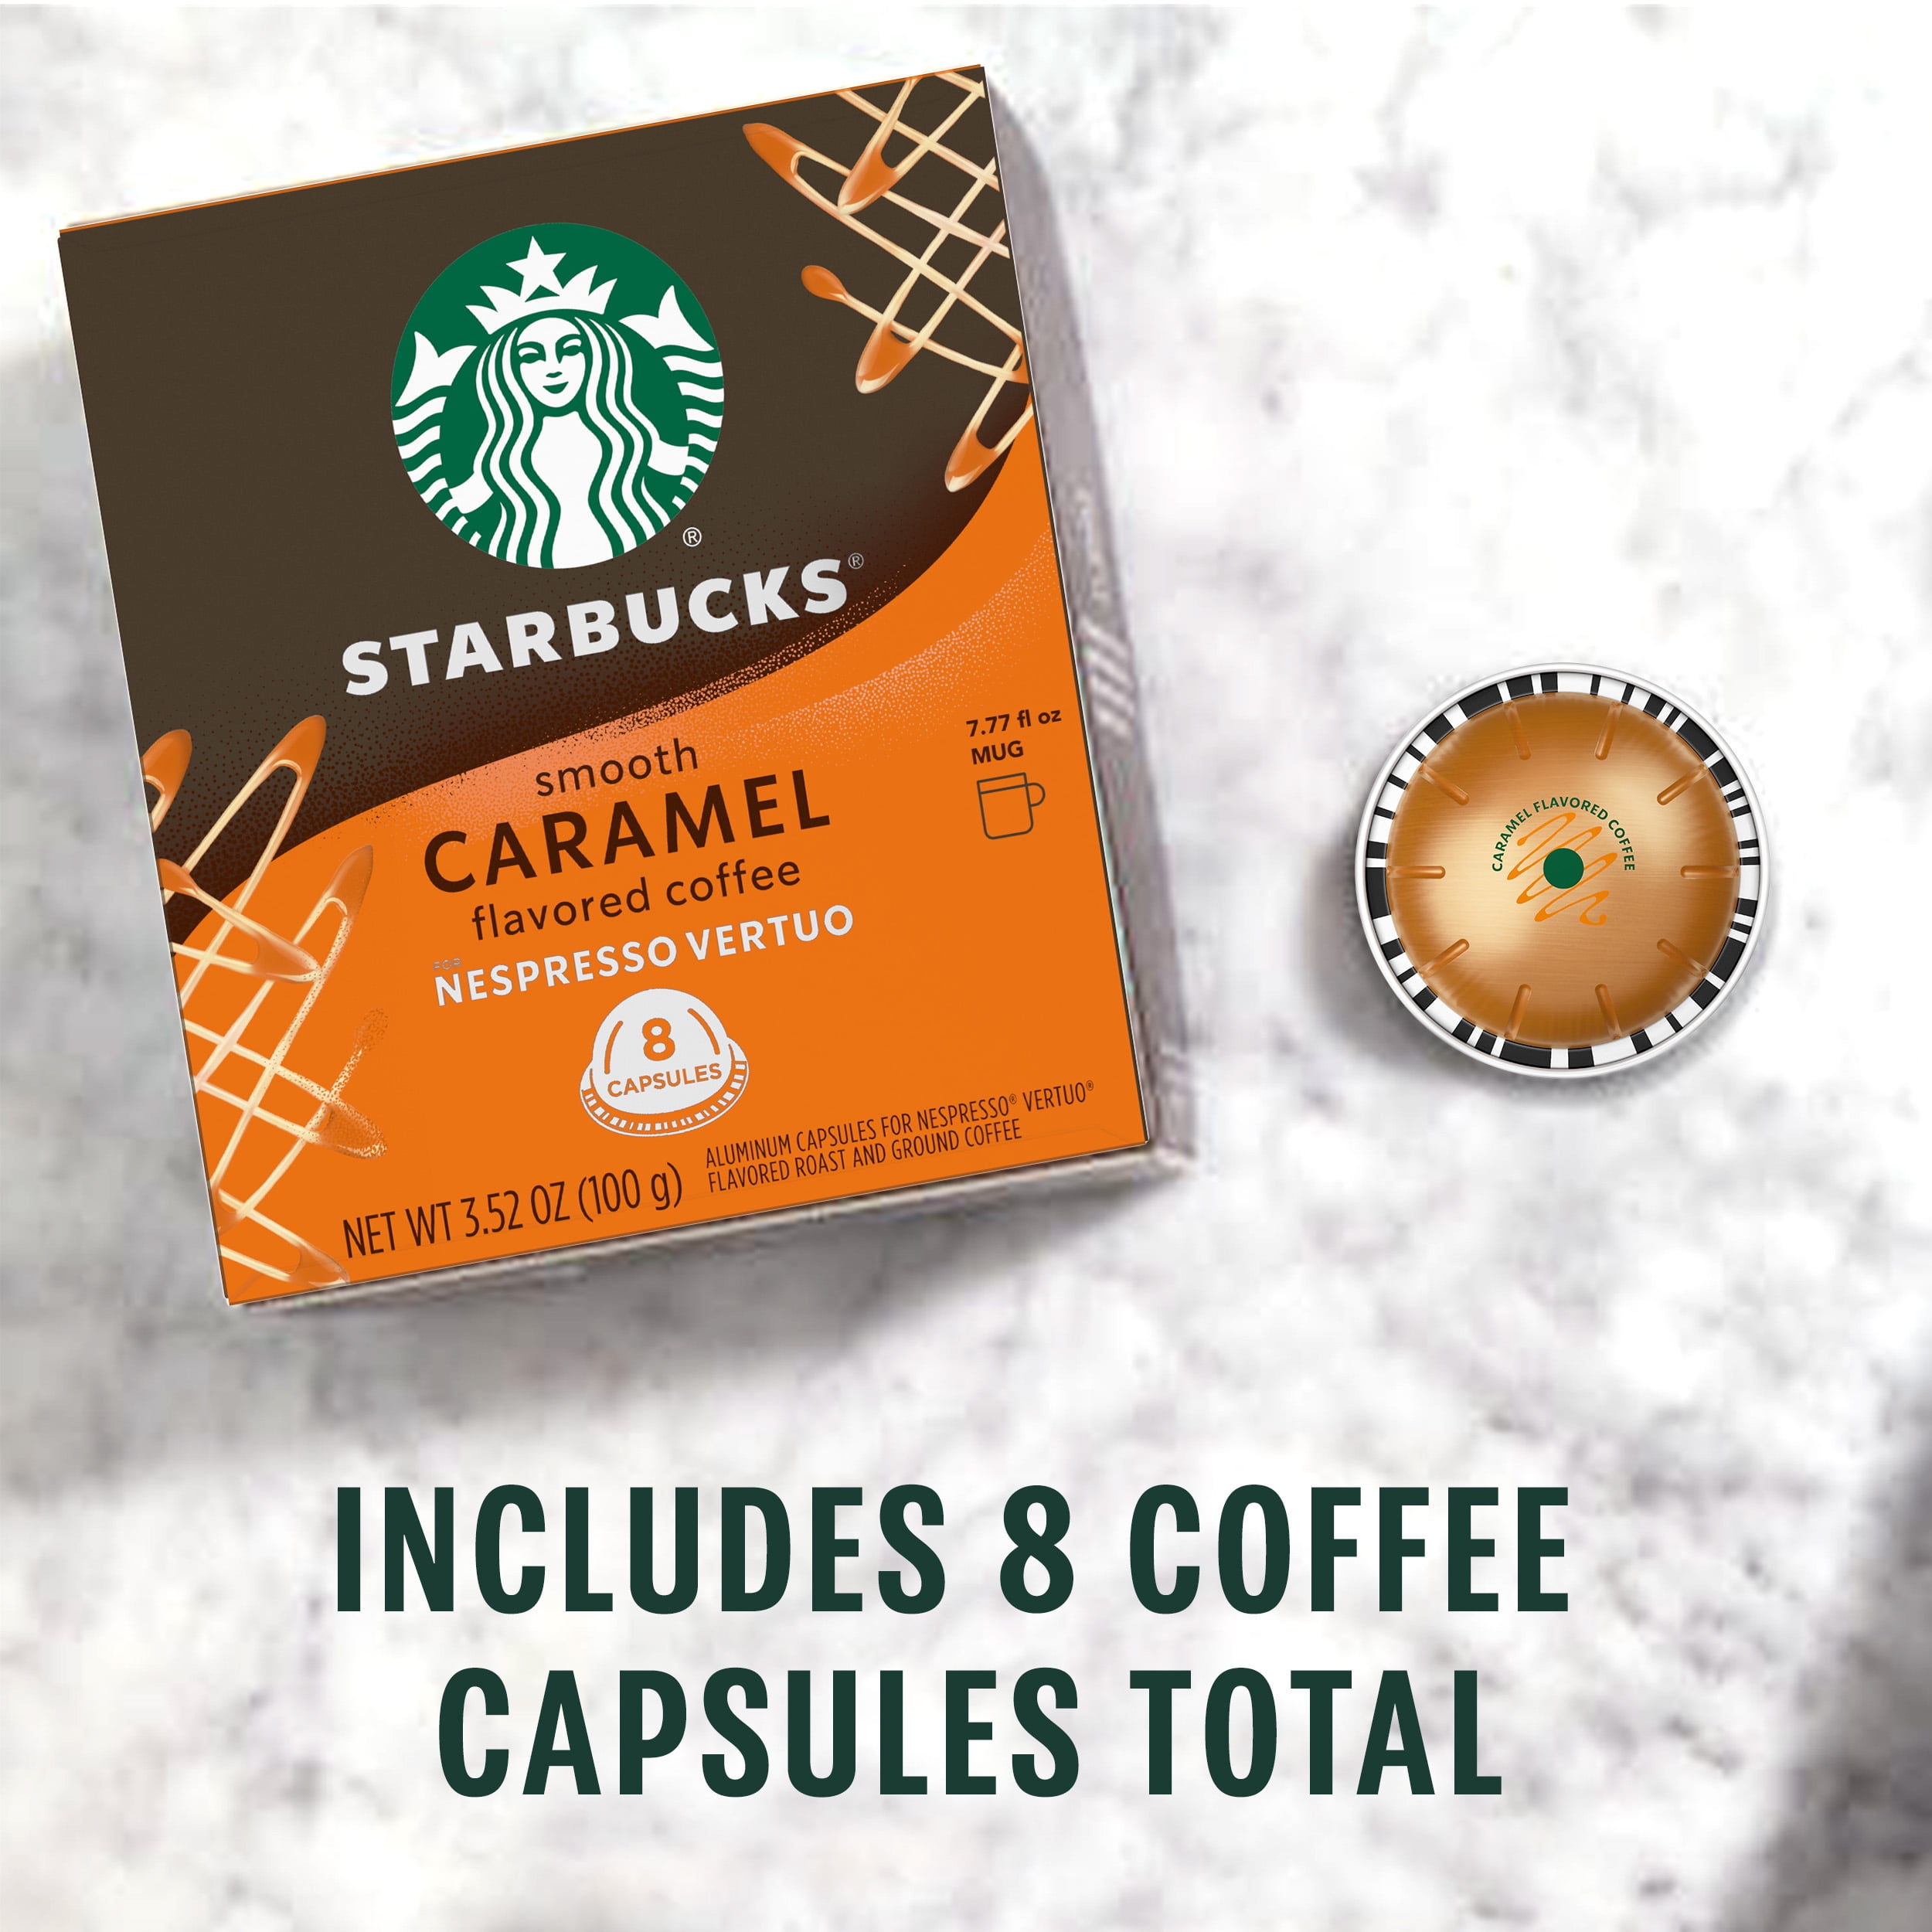 STARBUCKS,80 Capsules( Pack of 8 x10 Capsules), Nespresso Variety Pack